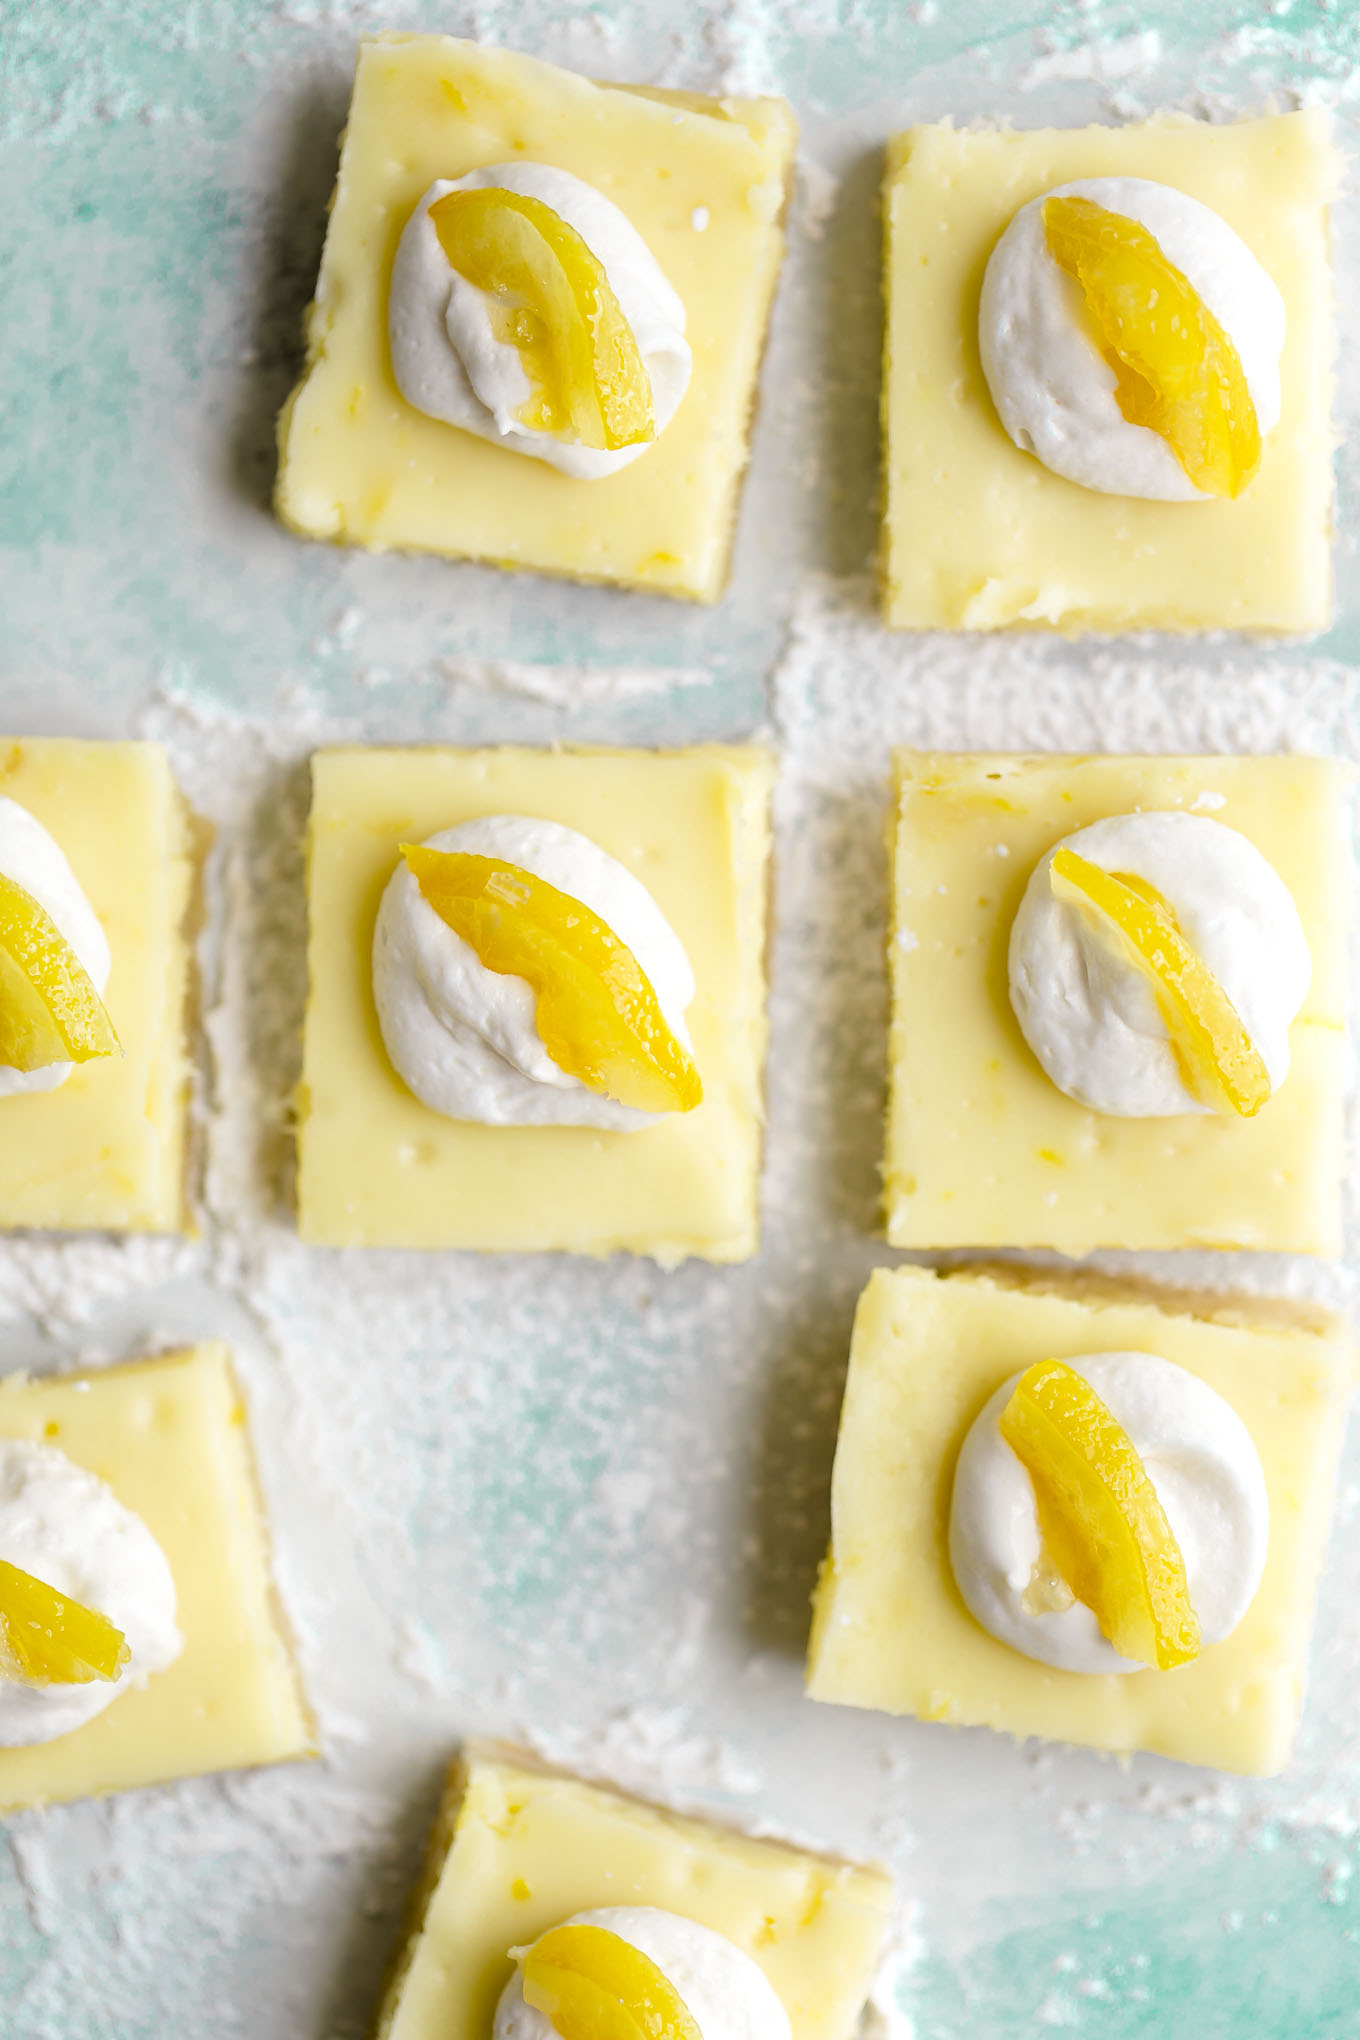 lemon cheesecake bars recipe